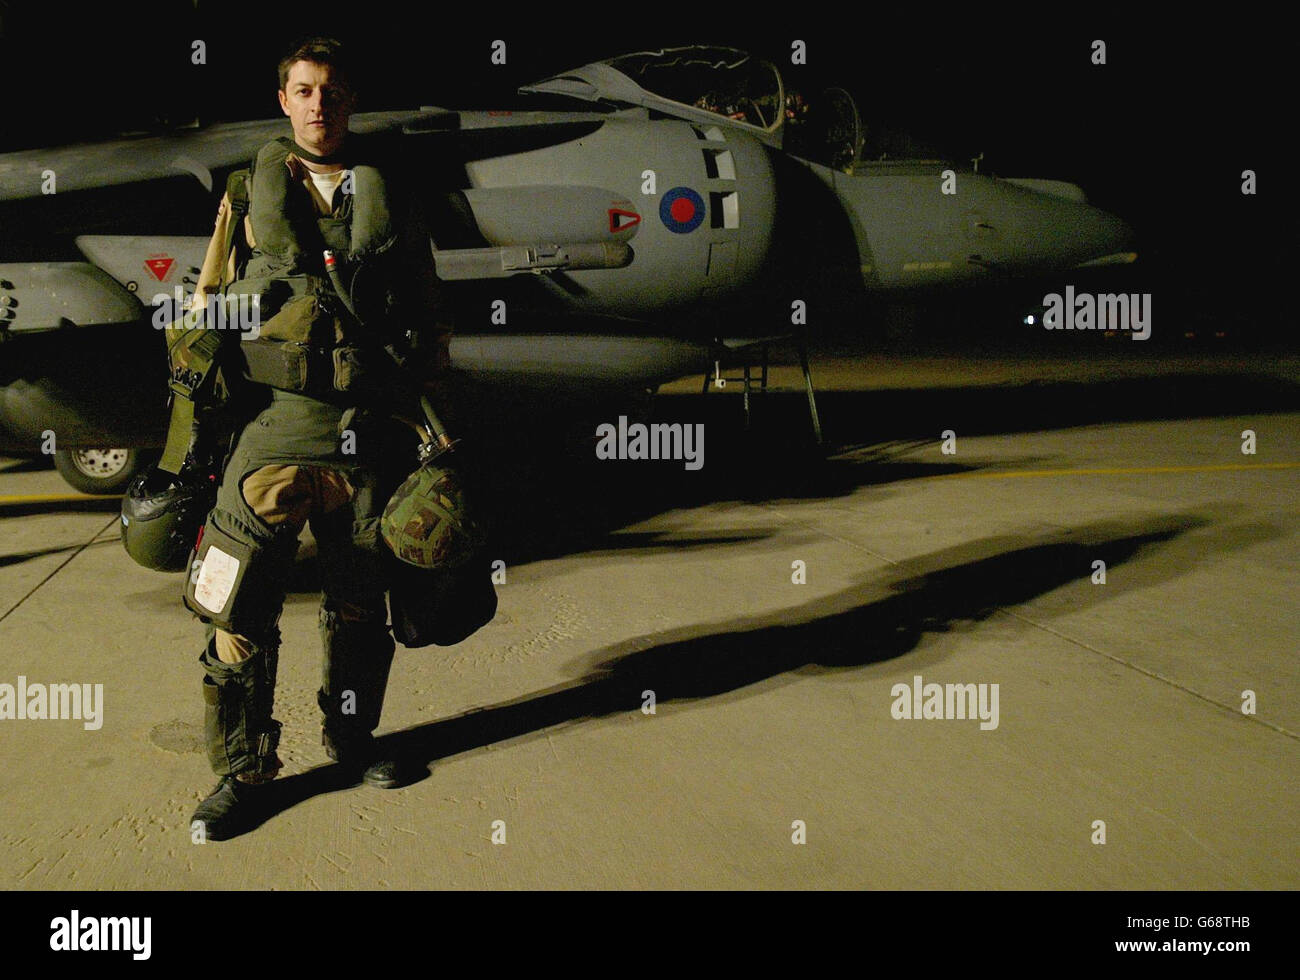 Il pilota britannico della Royal Air Force Flt Lt Ian Townsend è in piedi dal suo Harrier GR7 momenti dopo essere uscito dal suo aereo con i suoi piloni bomba vuoti dopo la sua missione sopra l'Iraq. * Townsend ha fatto cadere due bombe laser Paveway e due bombe freefall distruggendo due veicoli blindati. Foto Stock